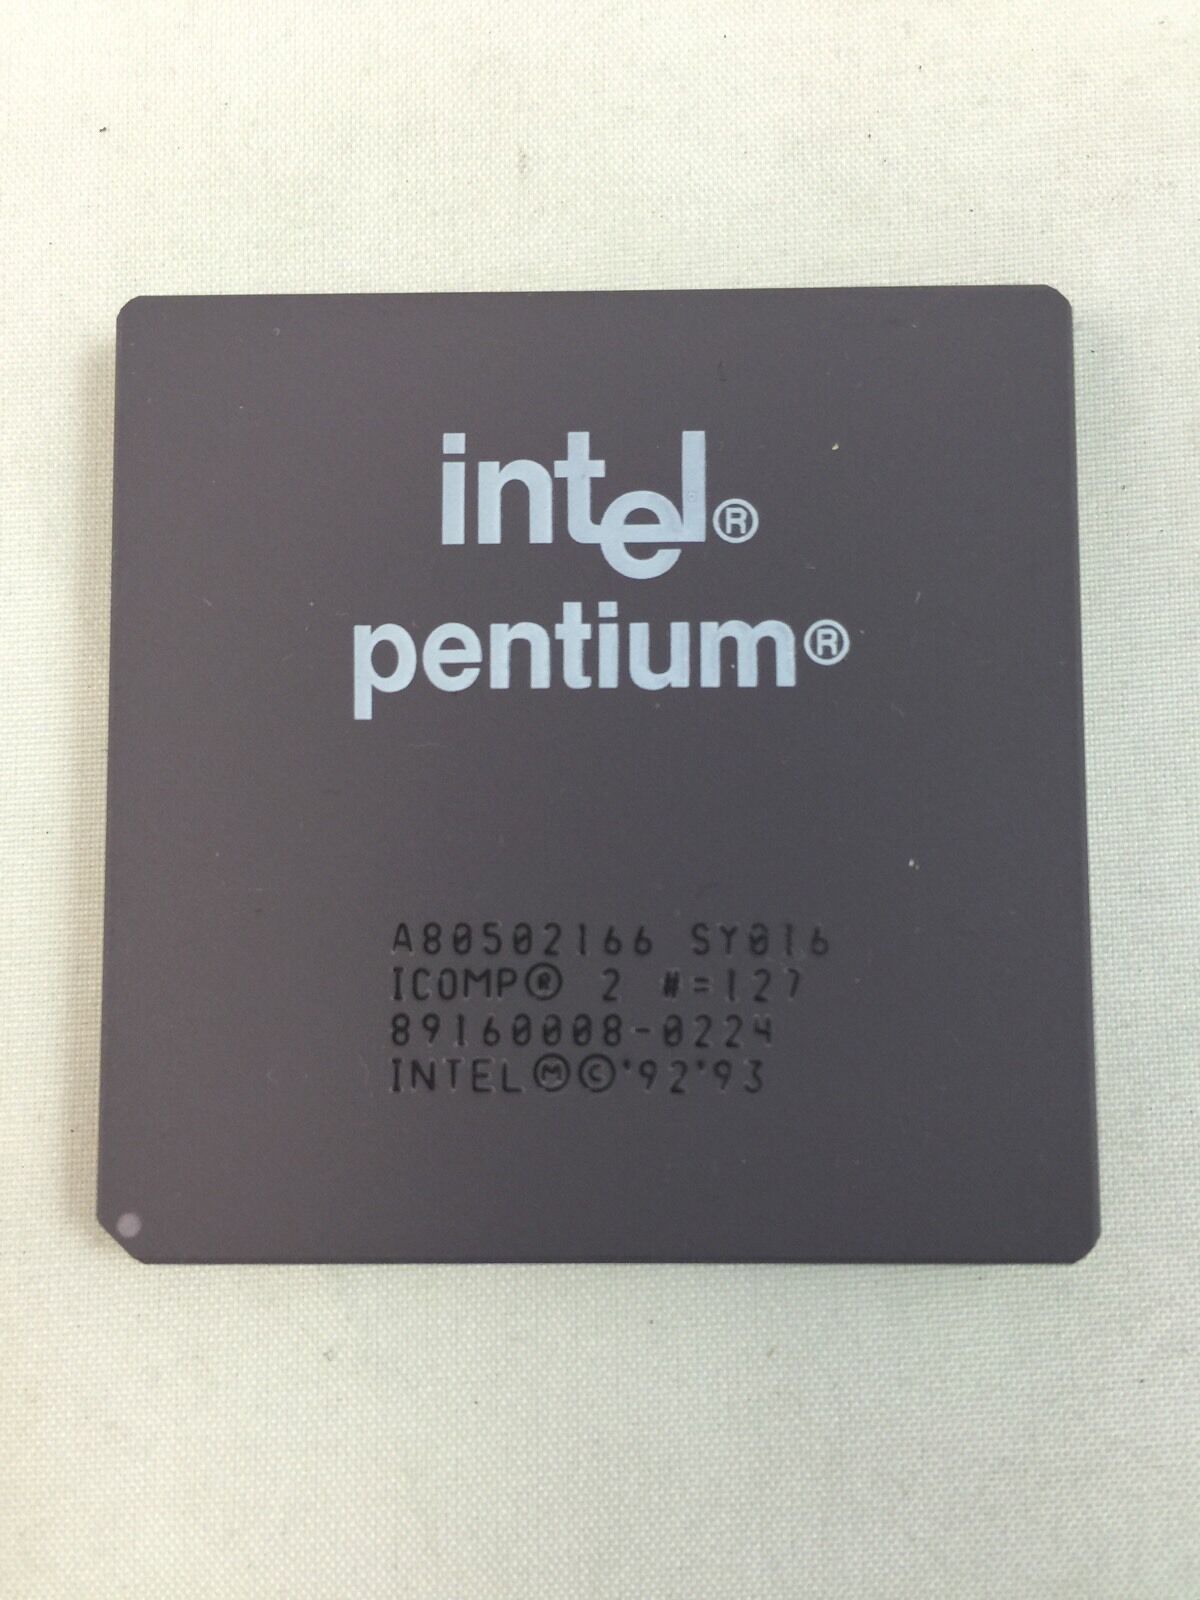 Intel Pentium 166 MHz CPU Vintage A80502166 1993 Ceramic Gold P166 